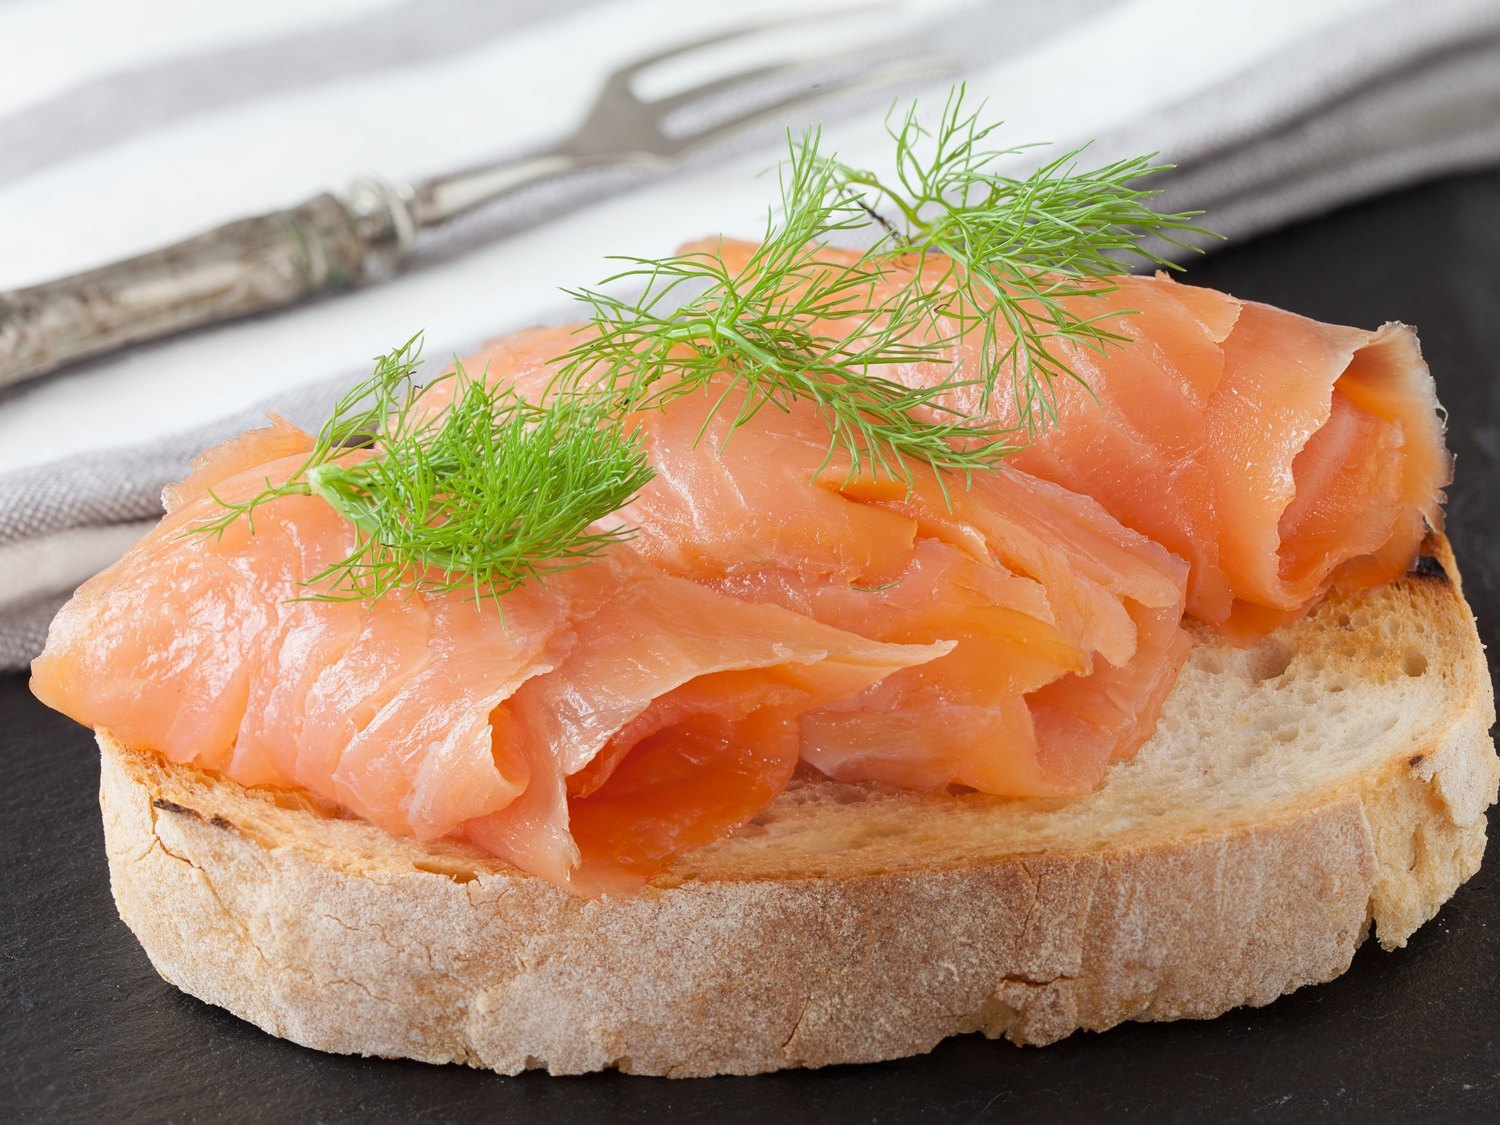 Alerta alimentaria: retiran este popular salmón ahumado del supermercado por listeria